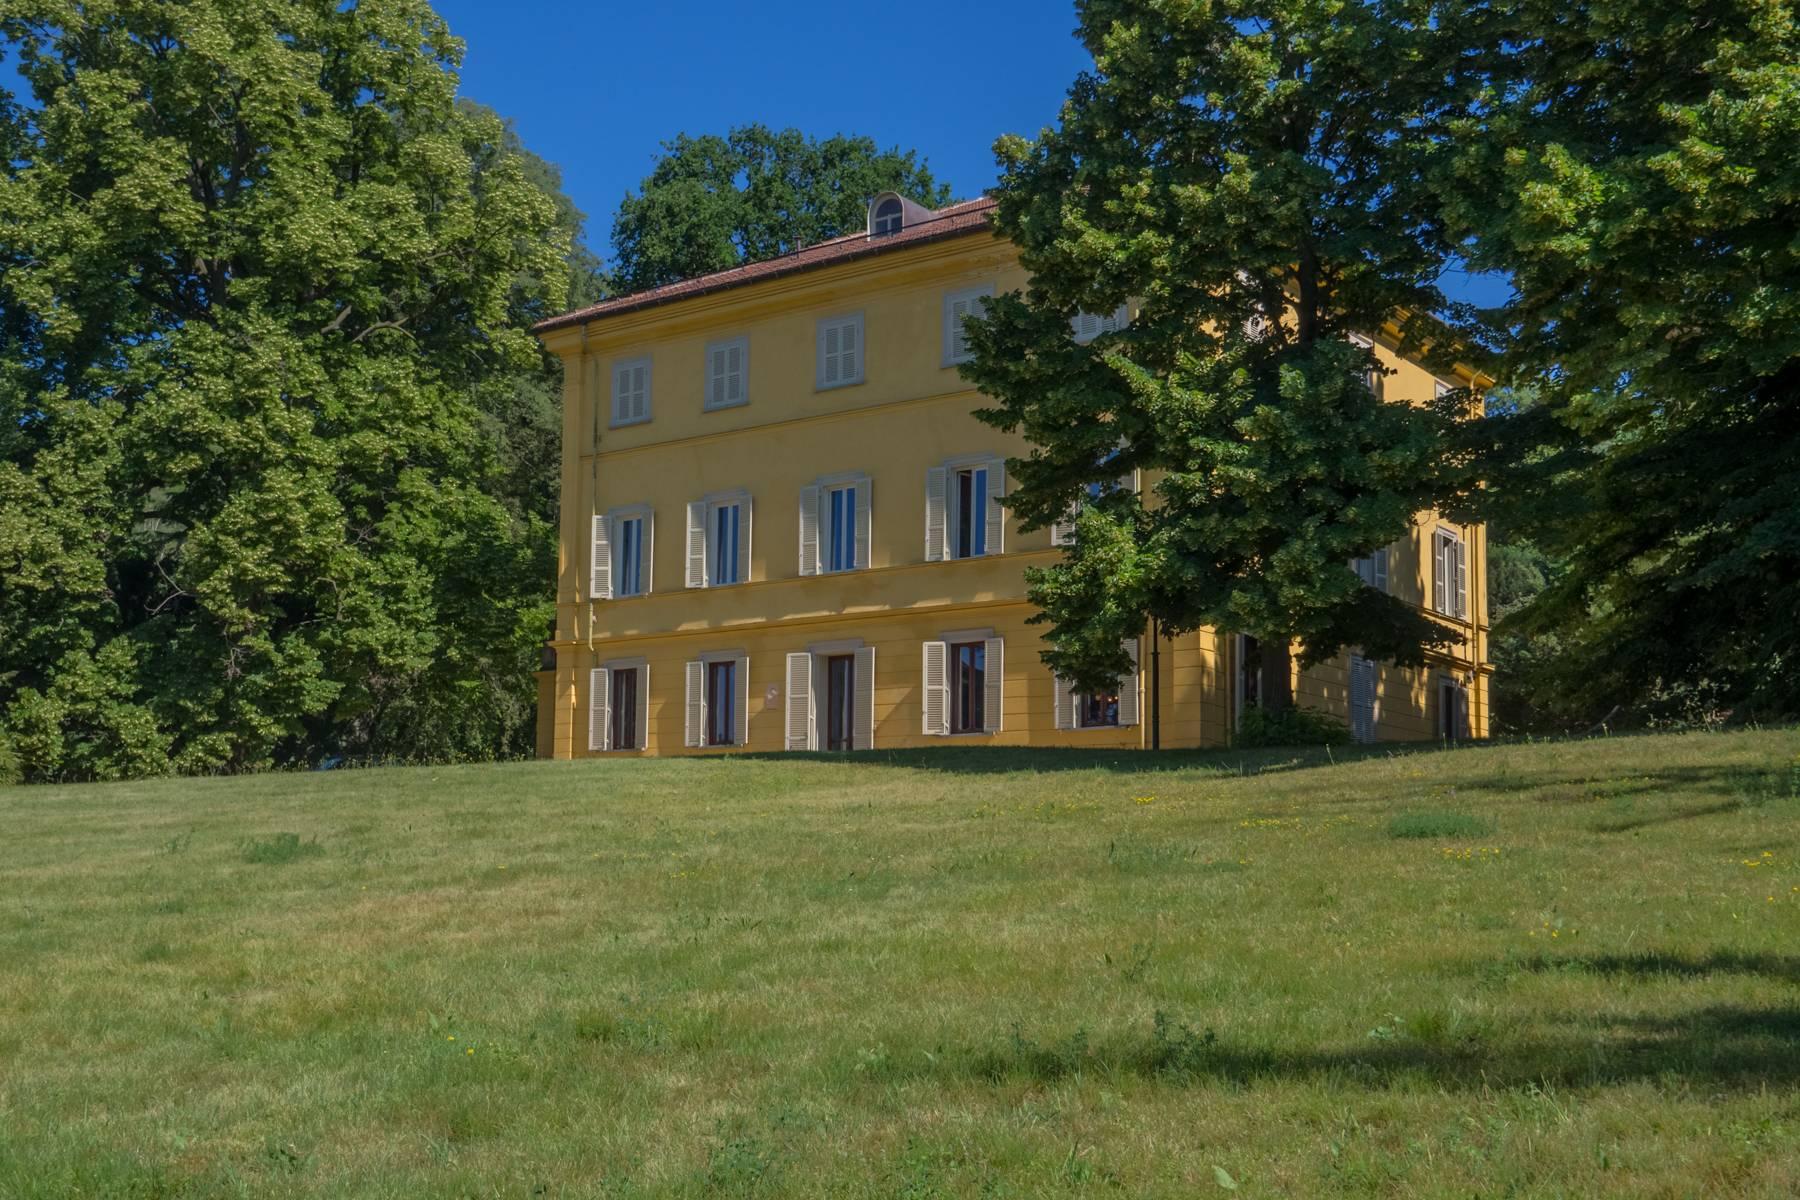 Elegante Historische Villa mitten im Grünen - 1